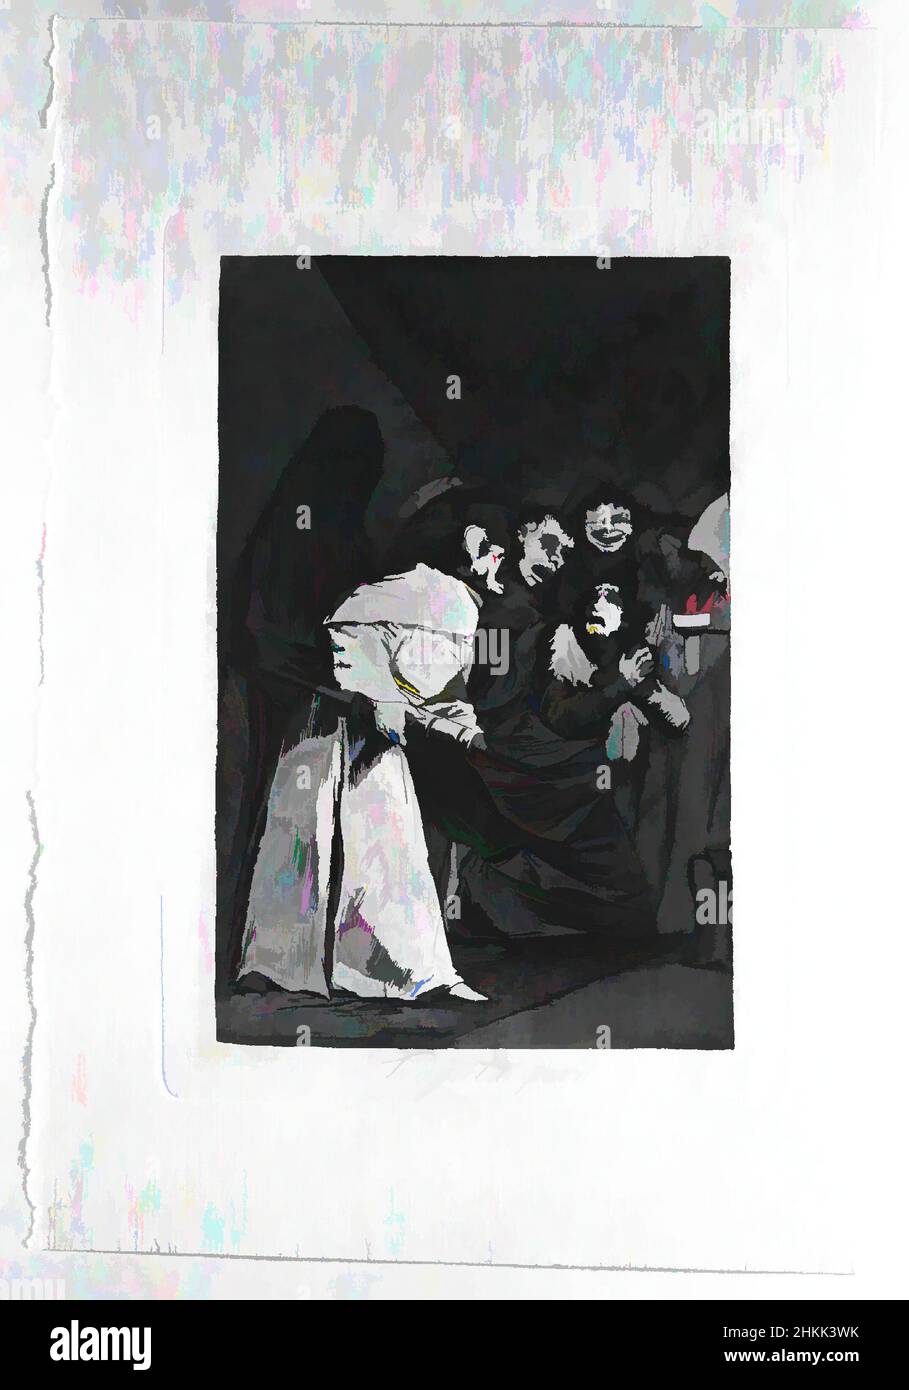 Kunst inspiriert von Swallow IT, Dog, Tragala perro, Los Caprichos, Teller 58, Francisco de Goya y Lucientes, Spanisch, 1746-1828, Radierung und Aquatinta auf gedecktem Papier, Spanien, 1797-1798, Blatt: 11 7/8 x 7 15/16 Zoll, 30,2 x 20,2 cm, Aquatinta, Gravieren, Radieren, Drucken, Satire, Satire, Spanien, Klassische Werke, die von Artotop mit einem Schuss Moderne modernisiert wurden. Formen, Farbe und Wert, auffällige visuelle Wirkung auf Kunst. Emotionen durch Freiheit von Kunstwerken auf zeitgemäße Weise. Eine zeitlose Botschaft, die eine wild kreative neue Richtung verfolgt. Künstler, die sich dem digitalen Medium zuwenden und die Artotop NFT erschaffen Stockfoto